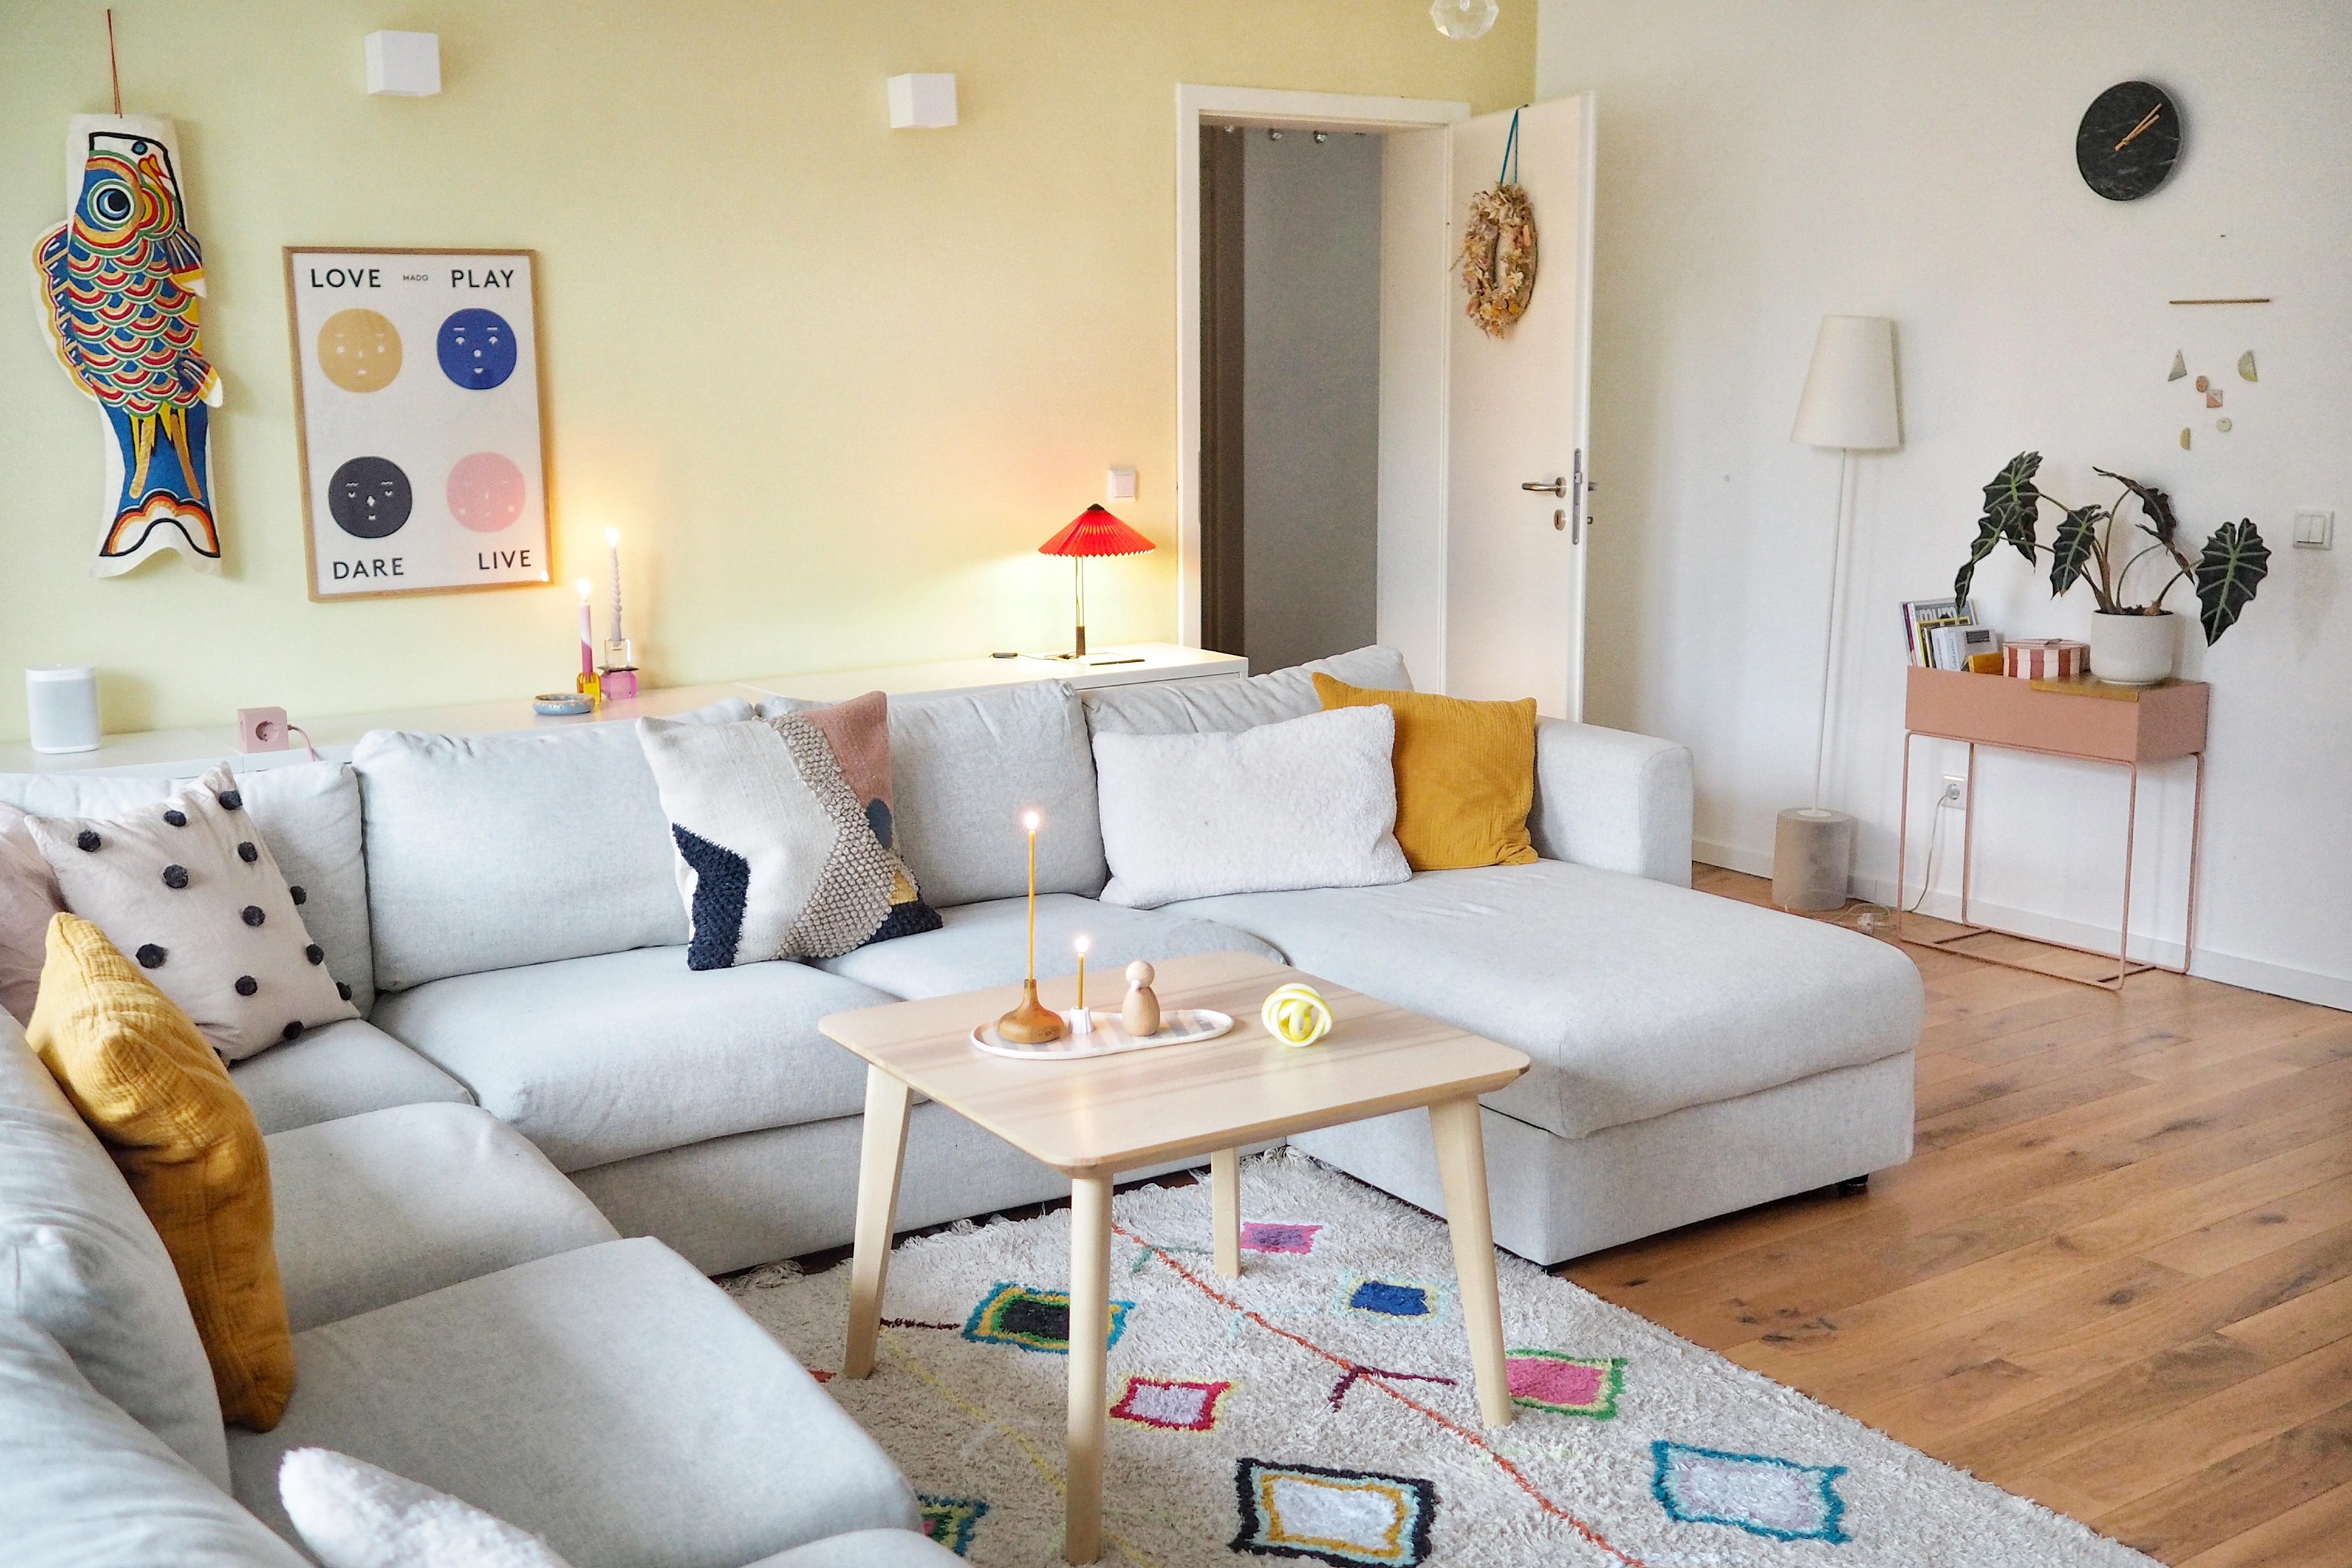 Ab auf die Couch und auf die Pizza warten!
#couchstyle #plantbox #wohnzimmer